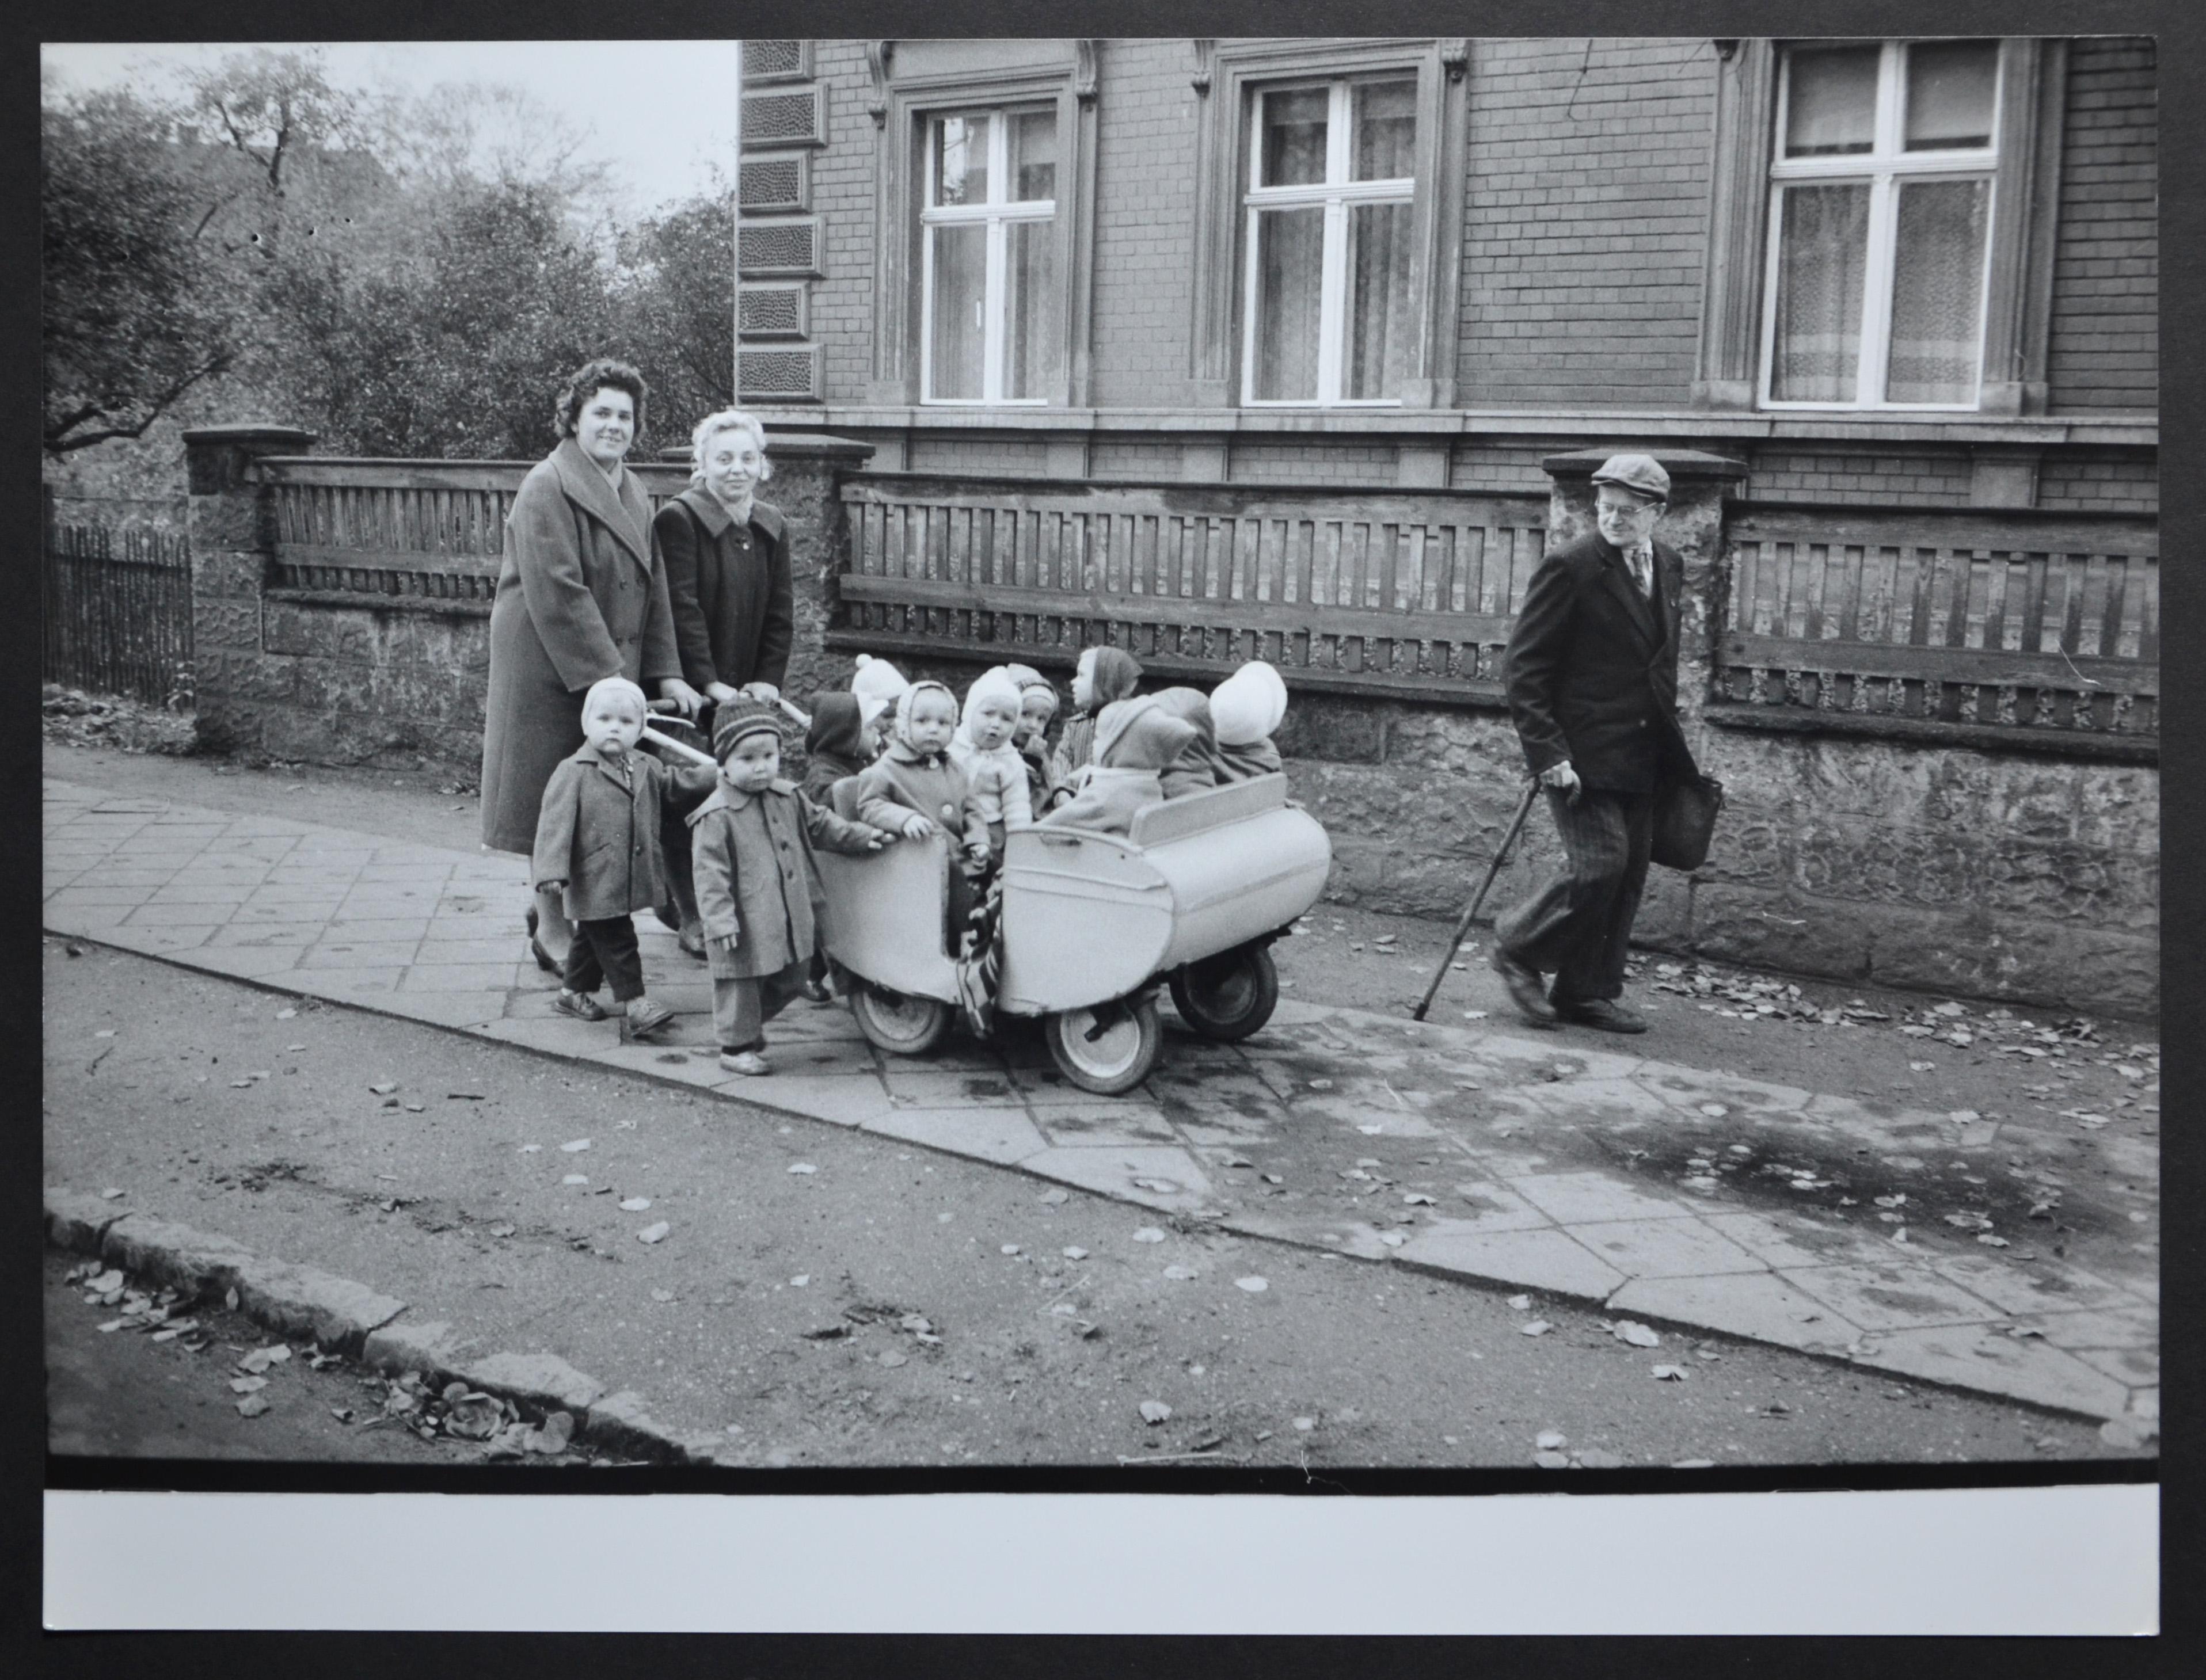 Black and White Photograph Rolf Gillhausen - Toddlers'excursion dans une charrette à la main, d'après-guerre, années 1950.